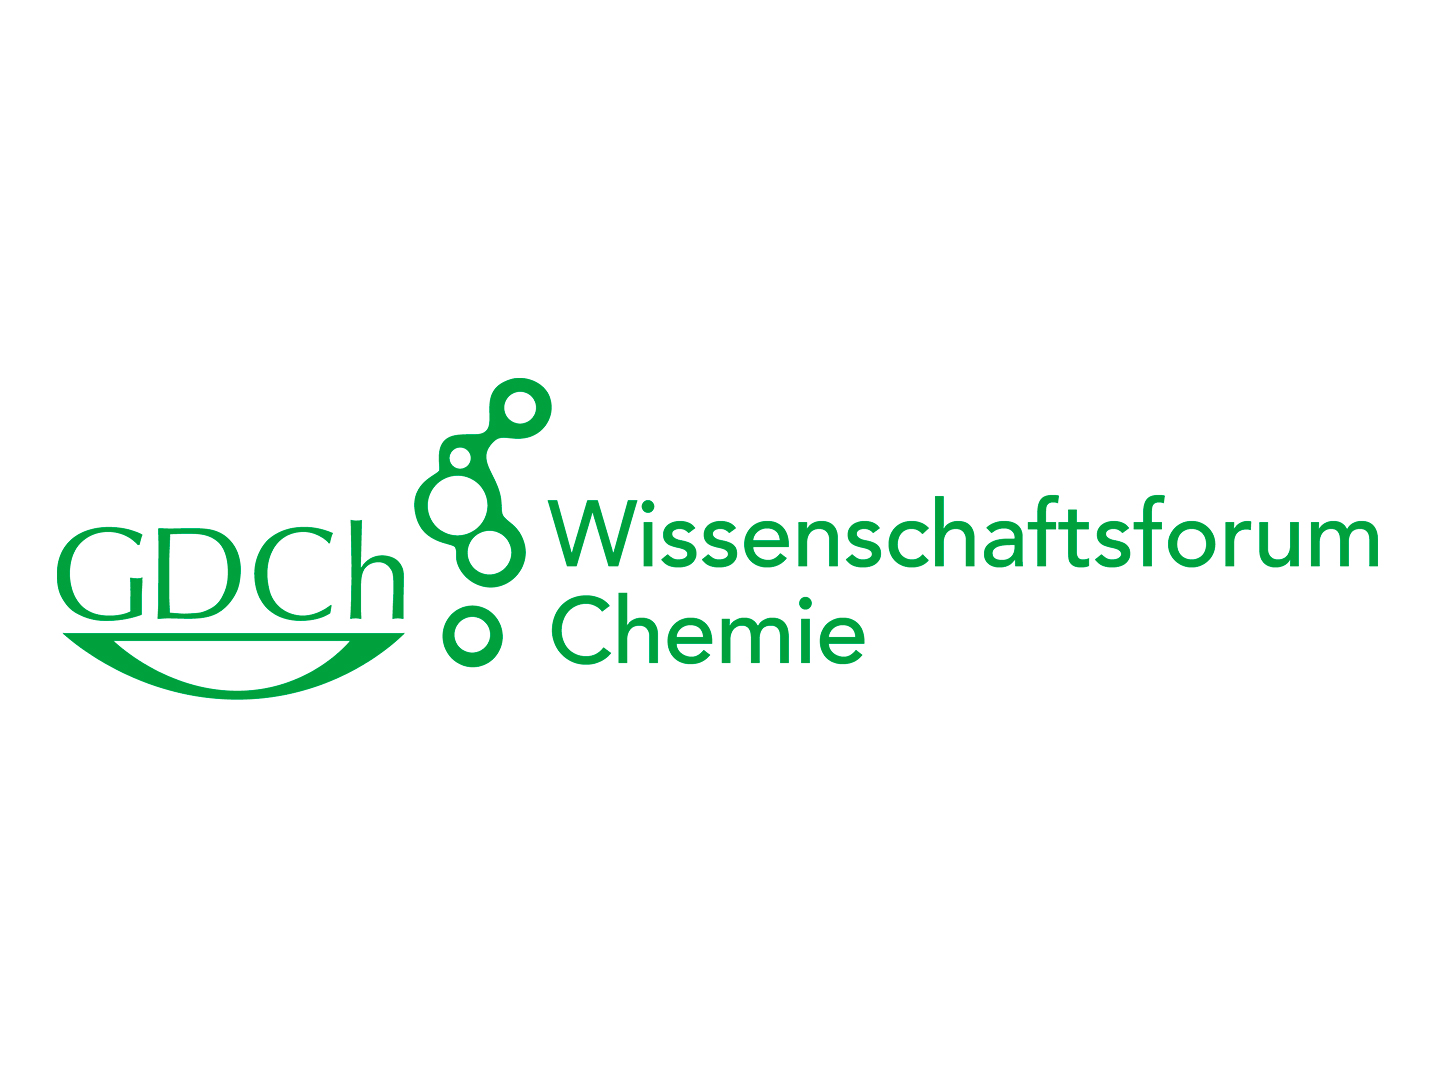 GDCh-Wissenschaftsforum Chemie erstmals digital